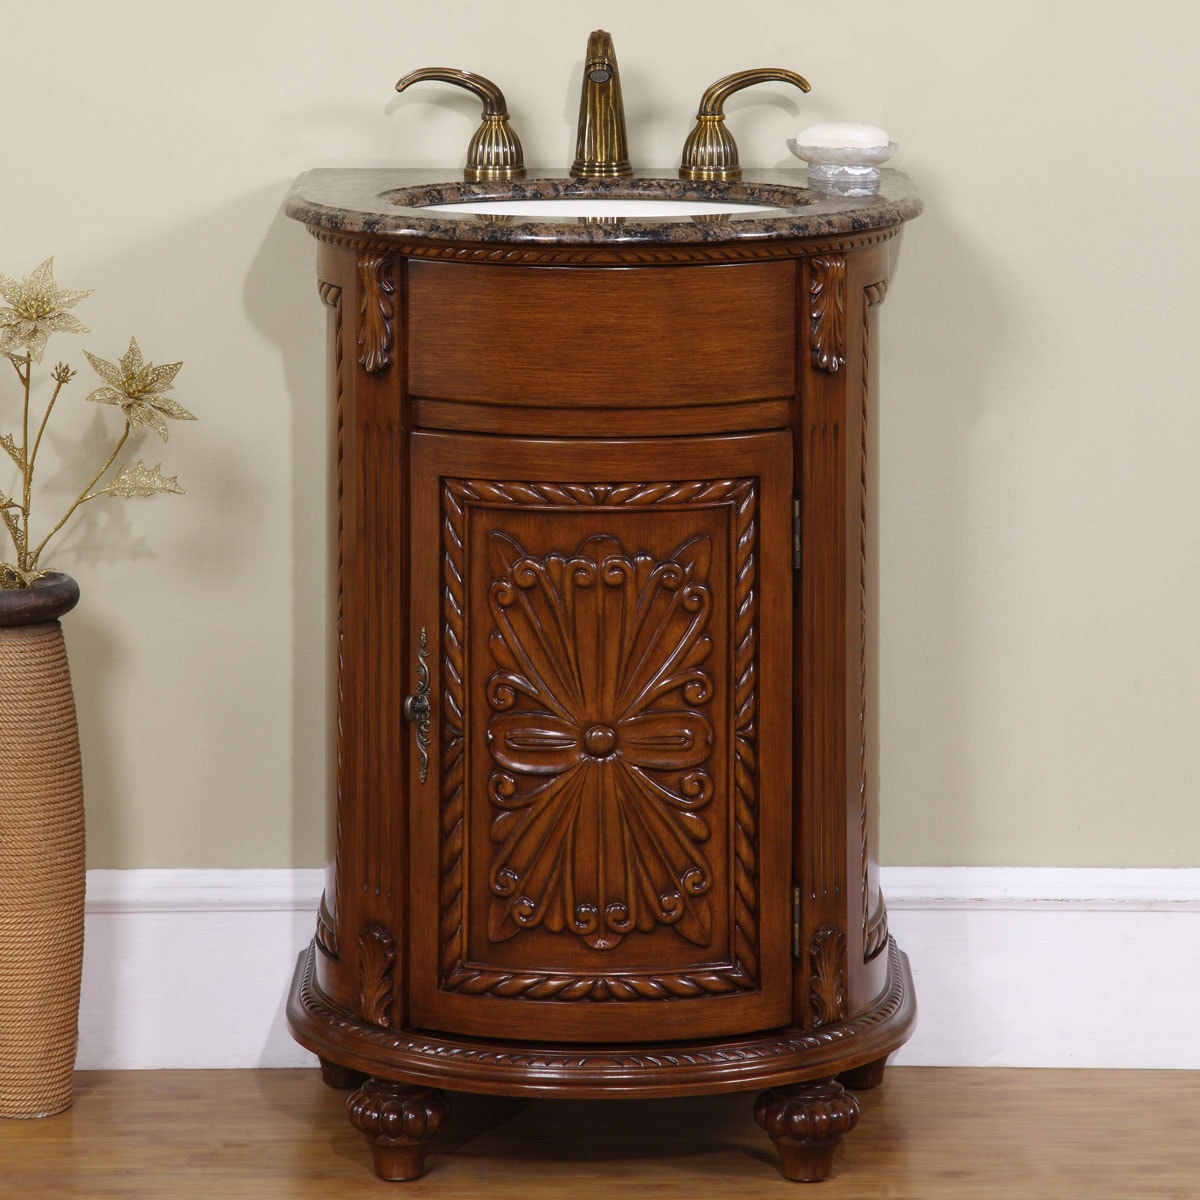 Pedestal Sink Bathroom Vanity Cabinet (As Is Item) - Bed Bath & Beyond -  32207408